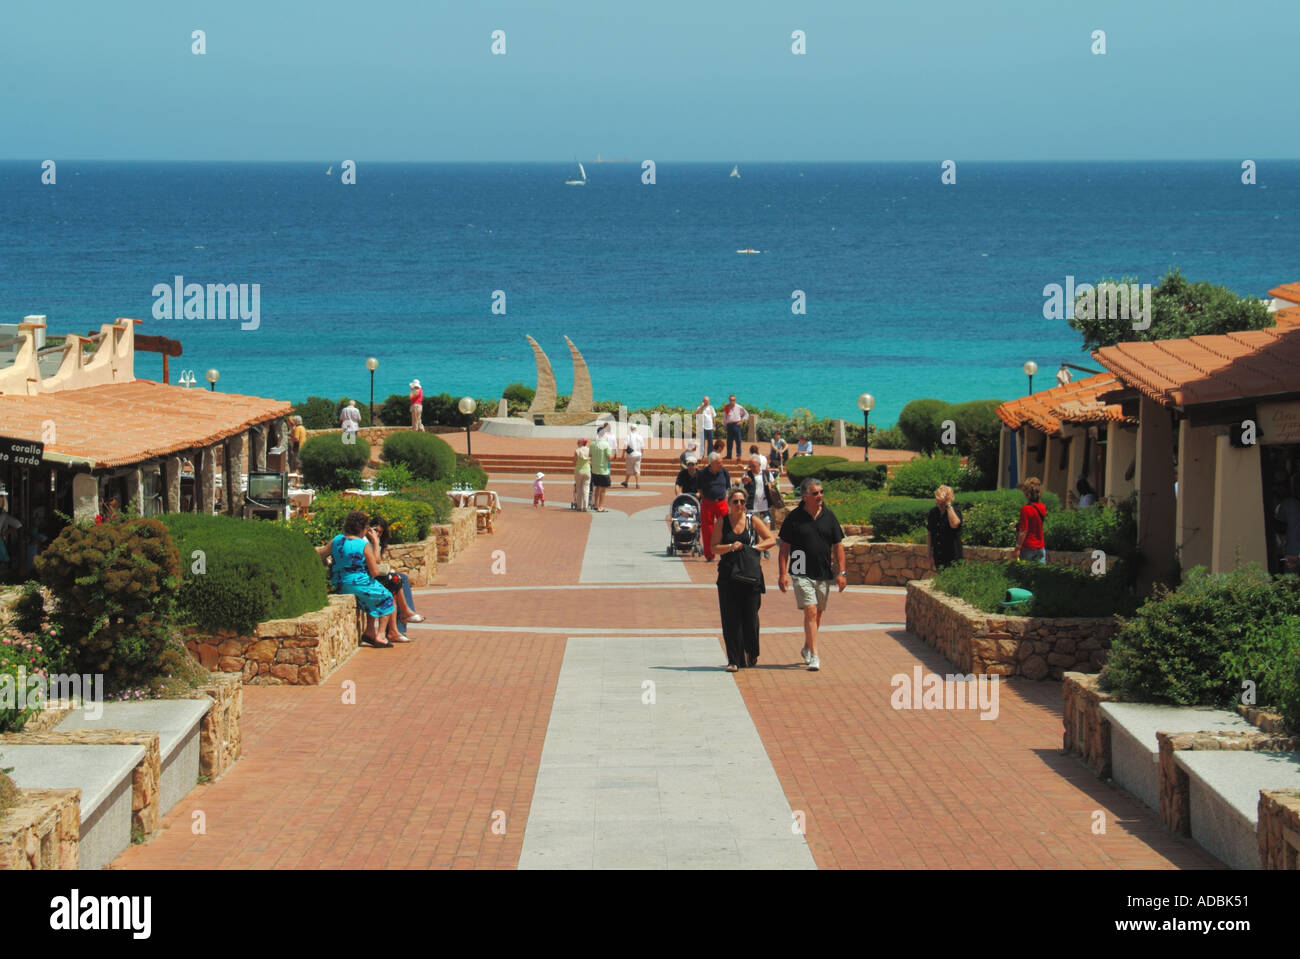 Baia Sardinia piccola stazione balneare moderna approccio sulla spiaggia e lo shopping concourse Foto Stock